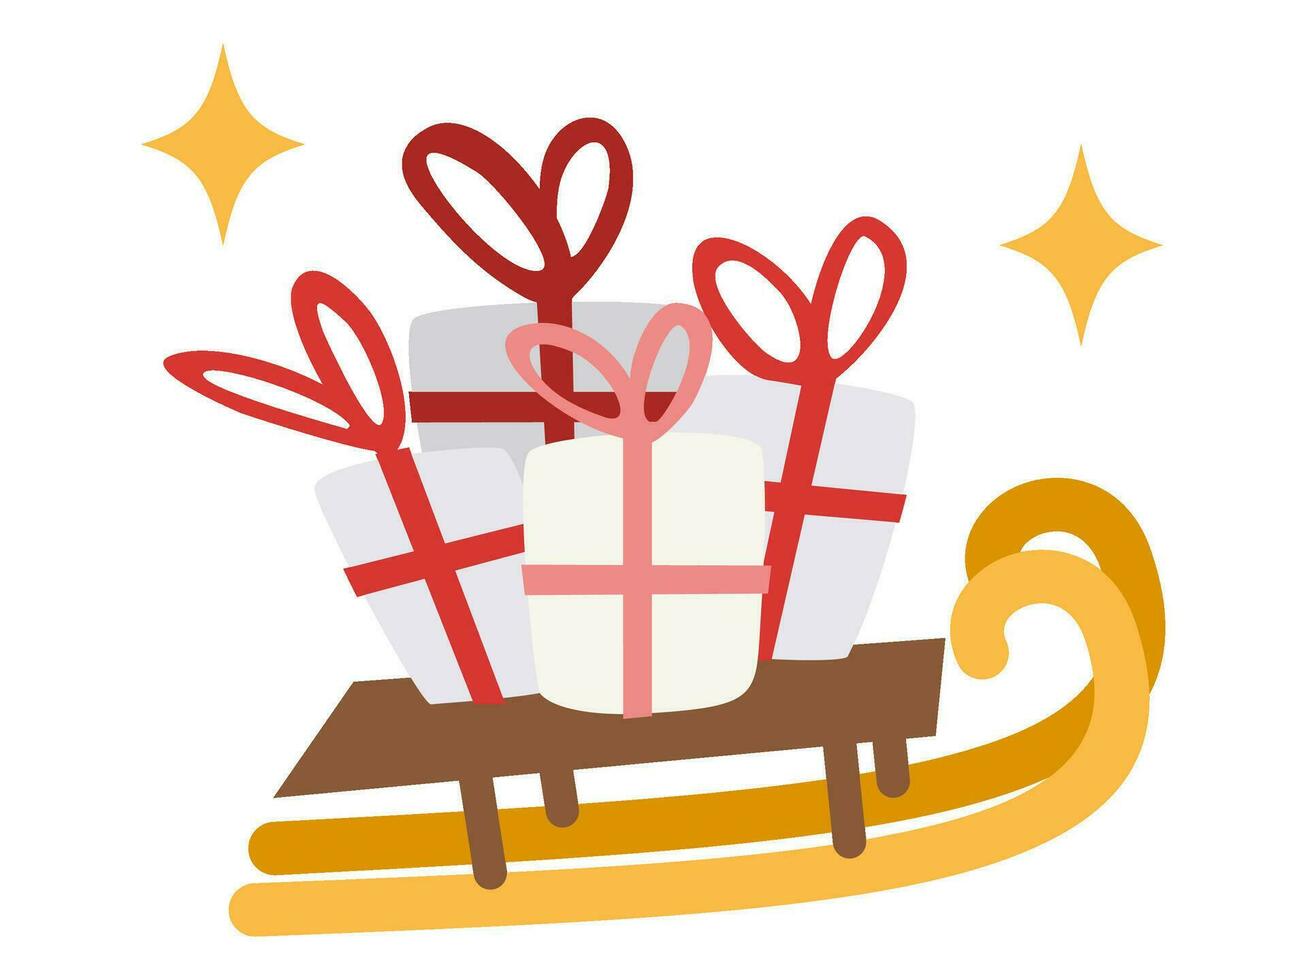 geschenk doos met rood lint en ster Kerstmis vector illustratie verzameling